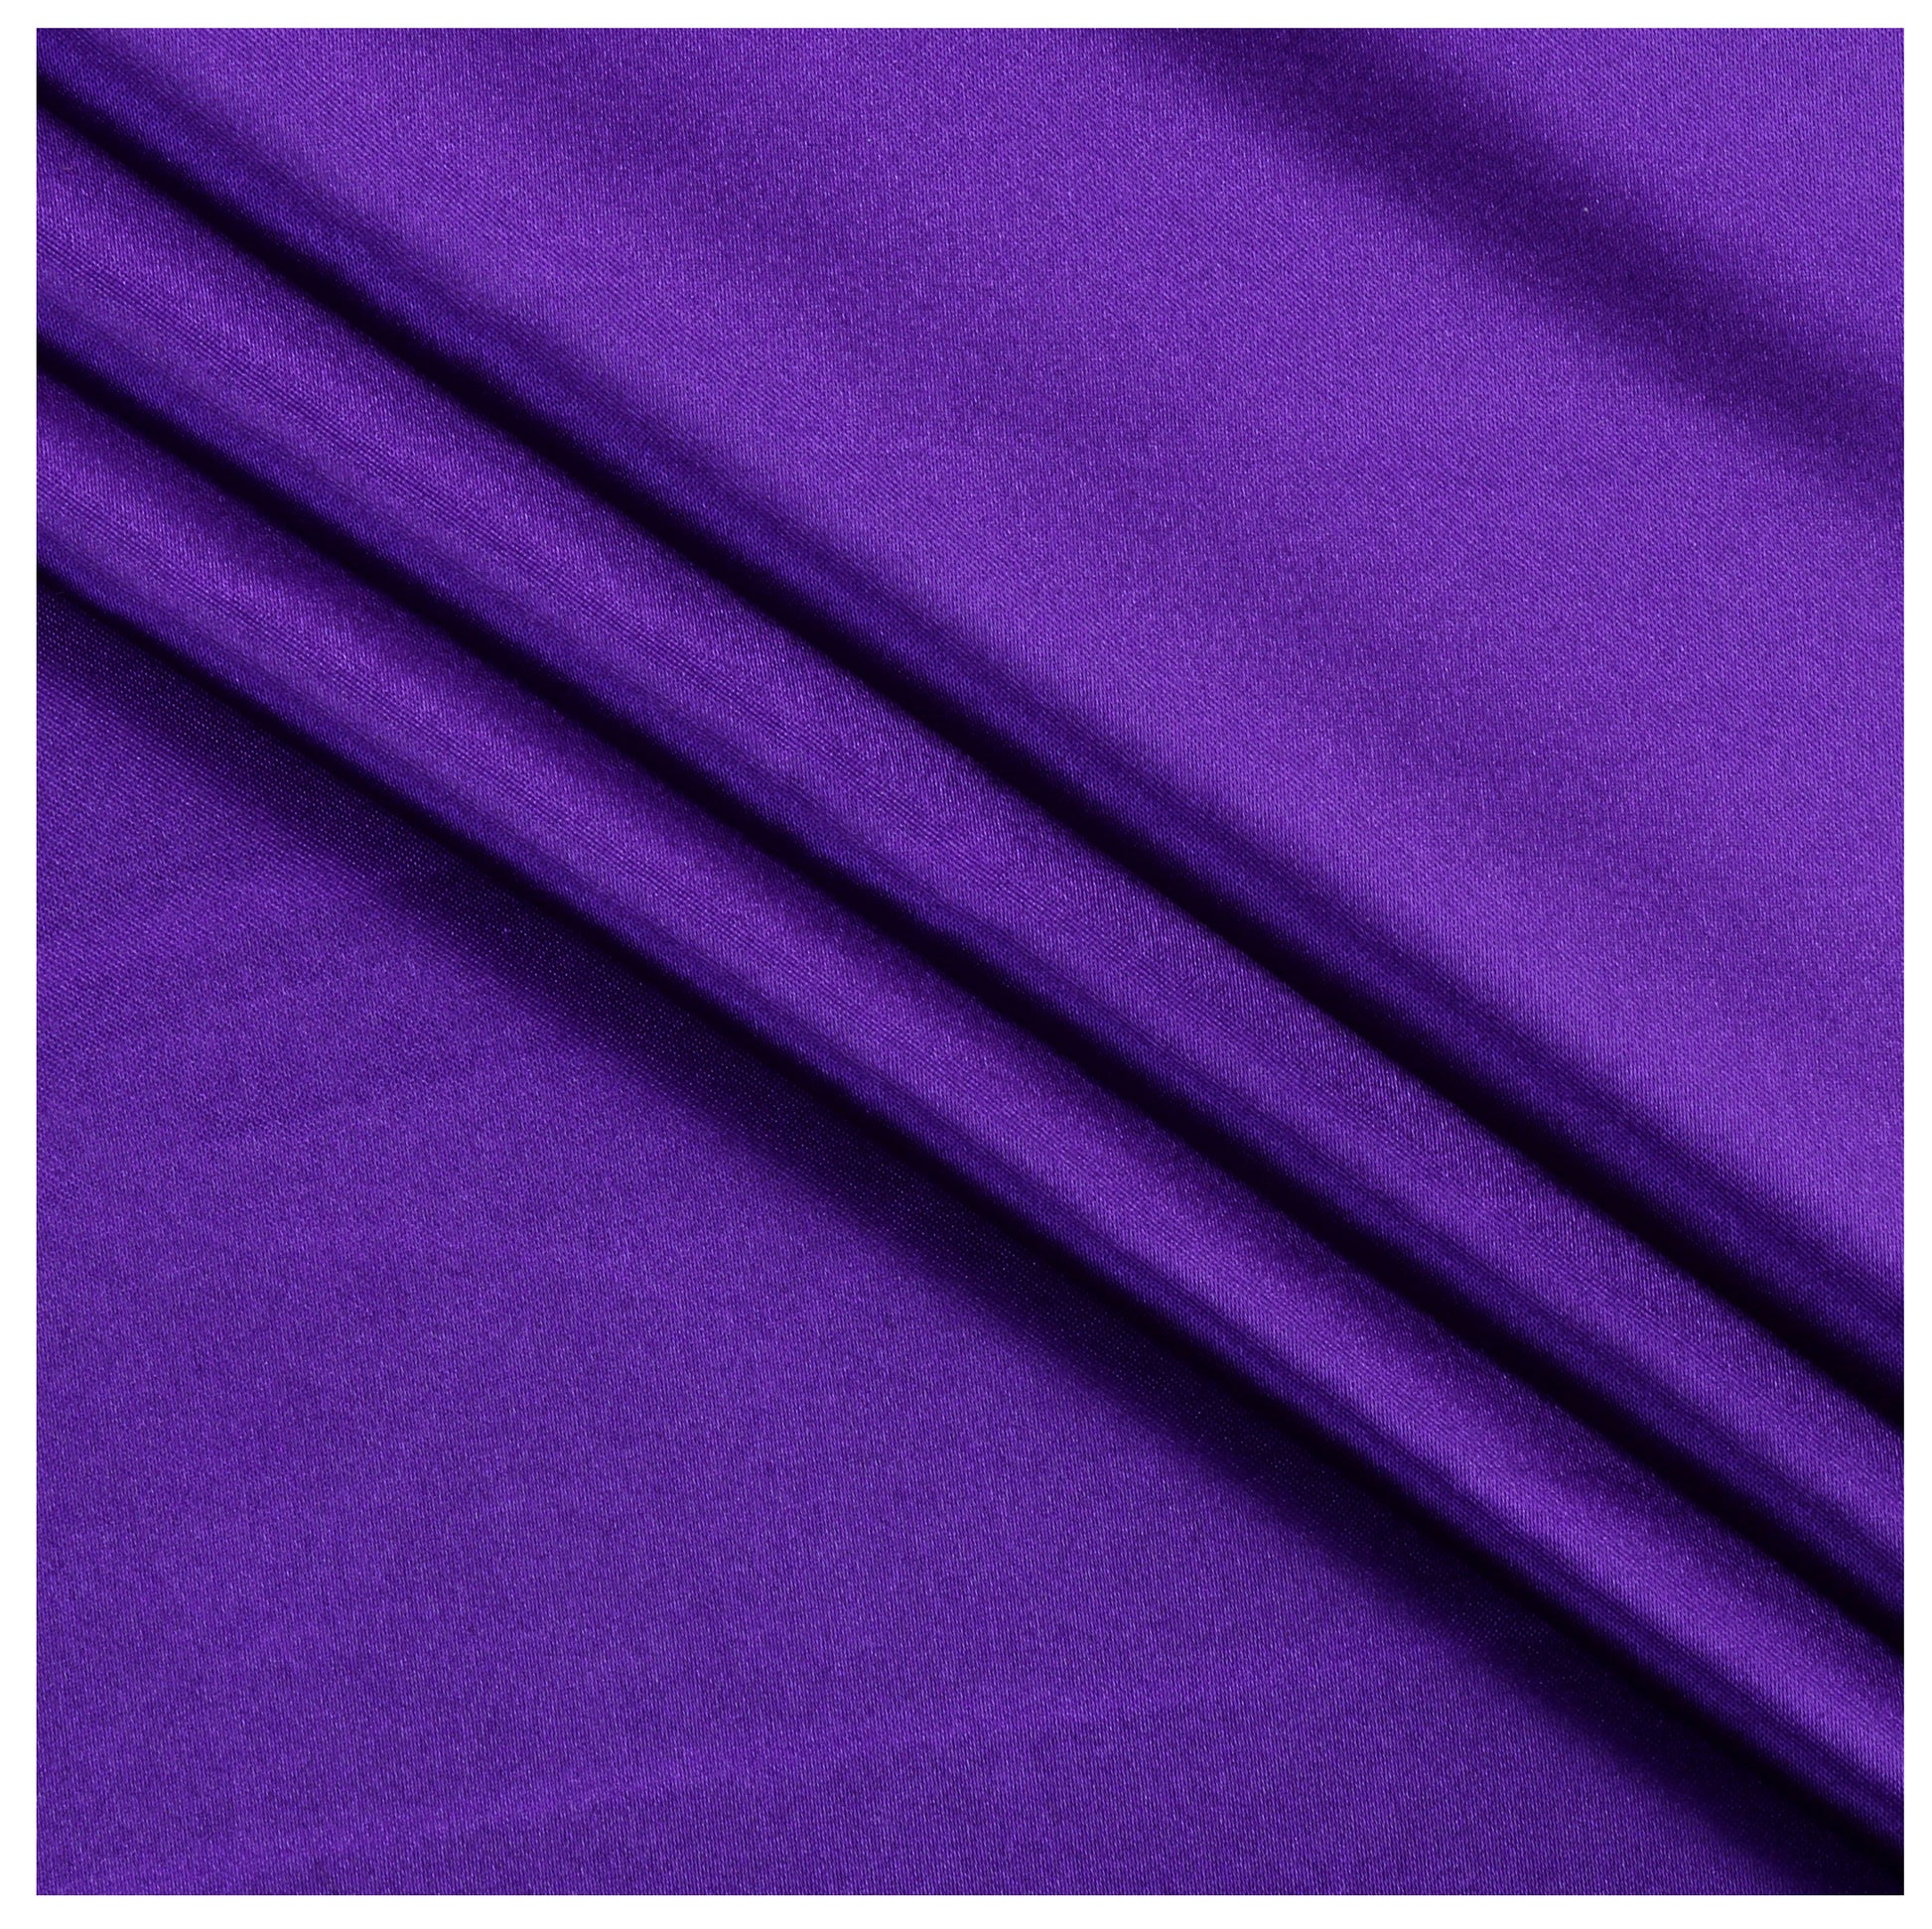 Cadbury Purple,7eb6bd4a-246a-45e7-b3c4-b8bc1f4c73bb